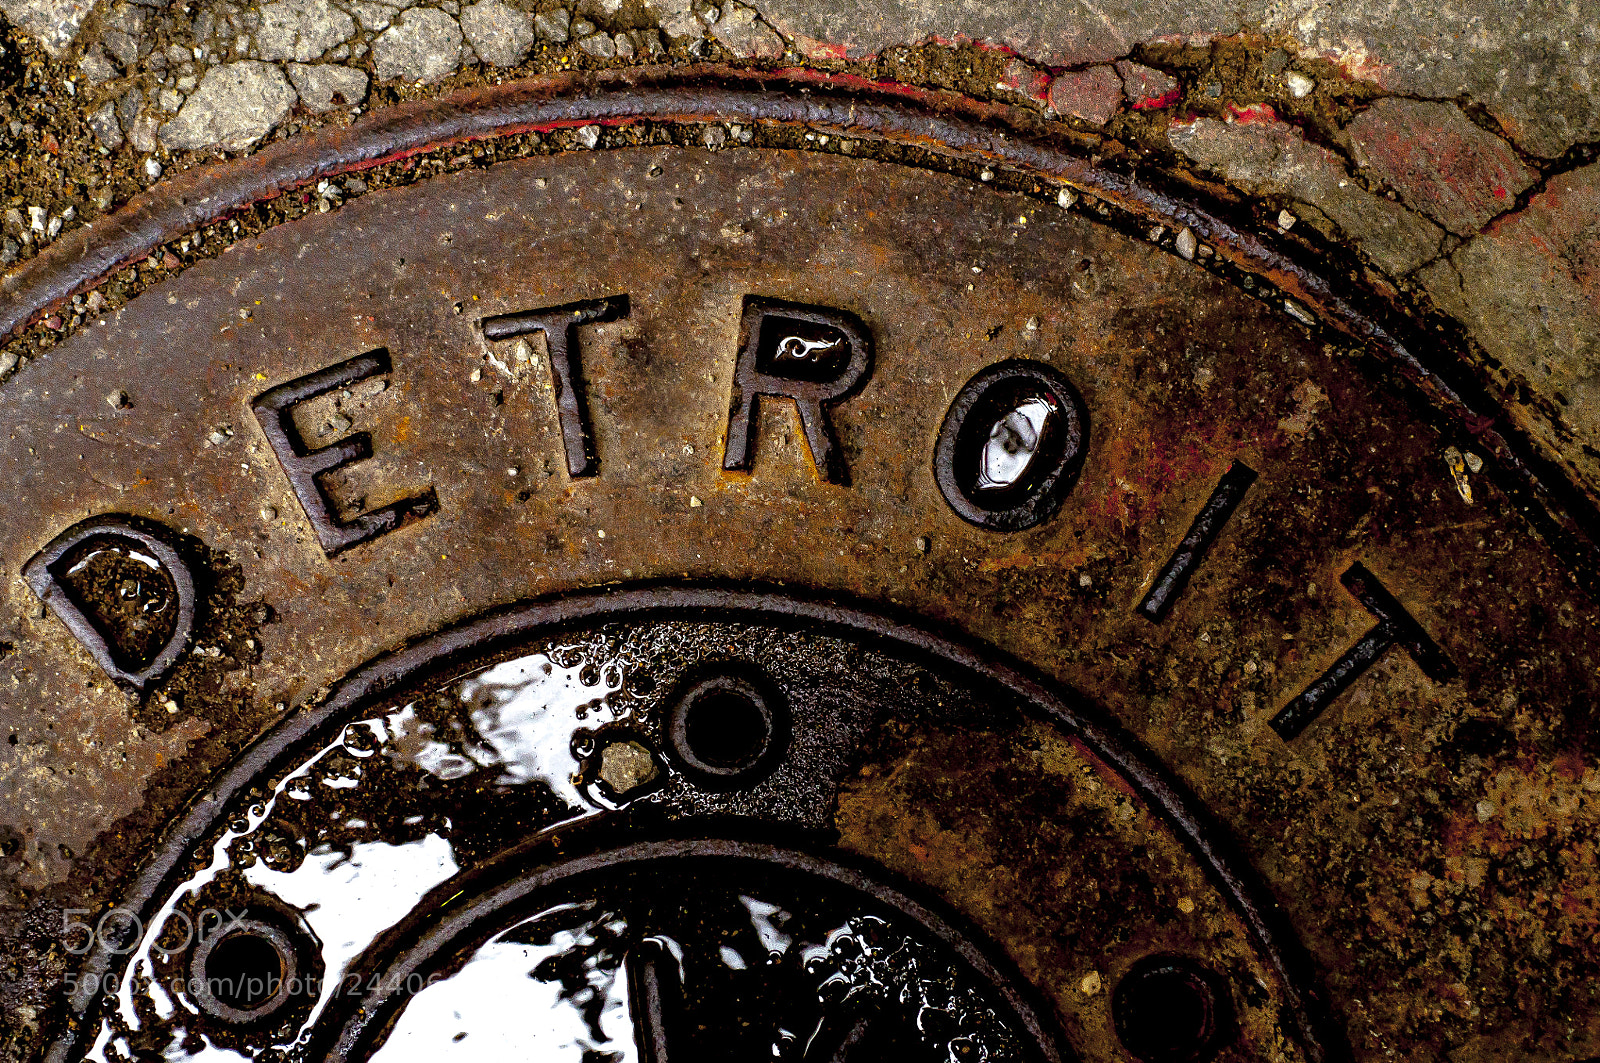 Nikon D90 sample photo. Detroit manhole cover color photography